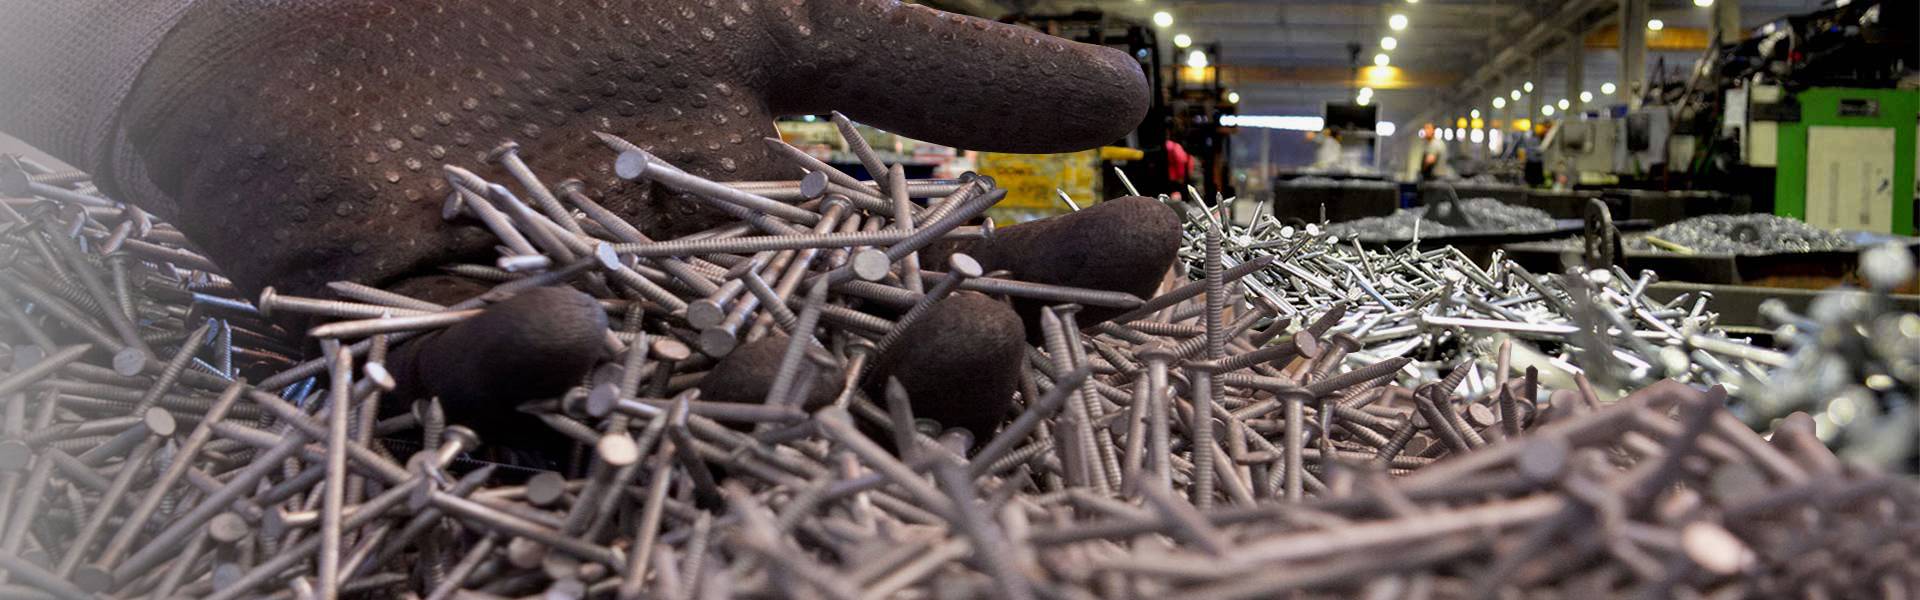 Una imagen muestra una gran cantidad de clavos de alambre de acero y la planta de producción.